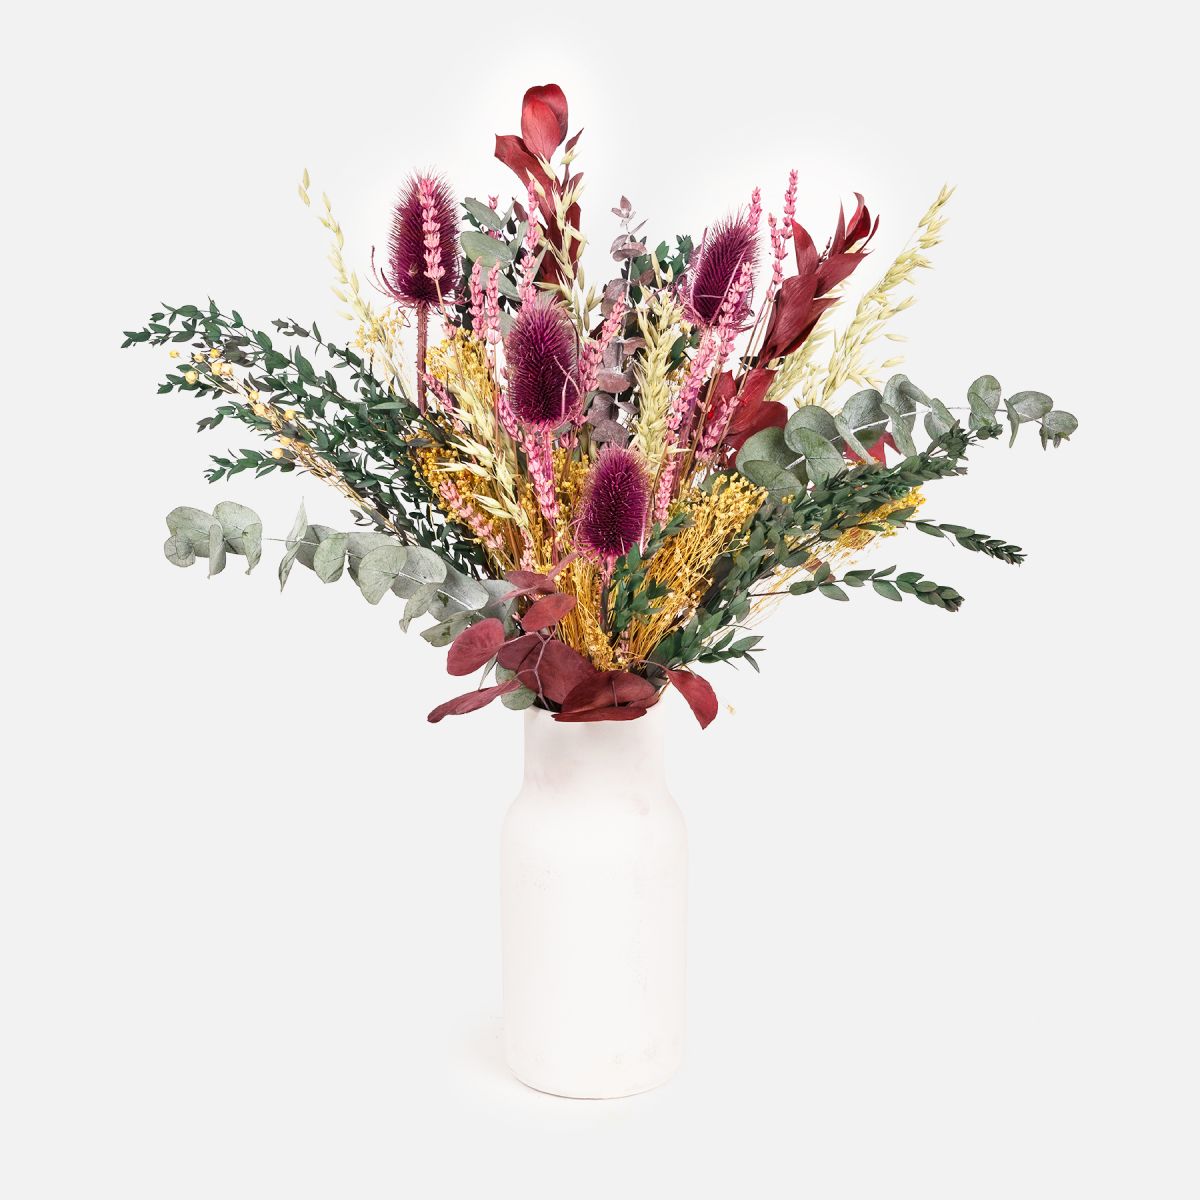 La flor seca como elemento decorativo para el hogar - Empresa 